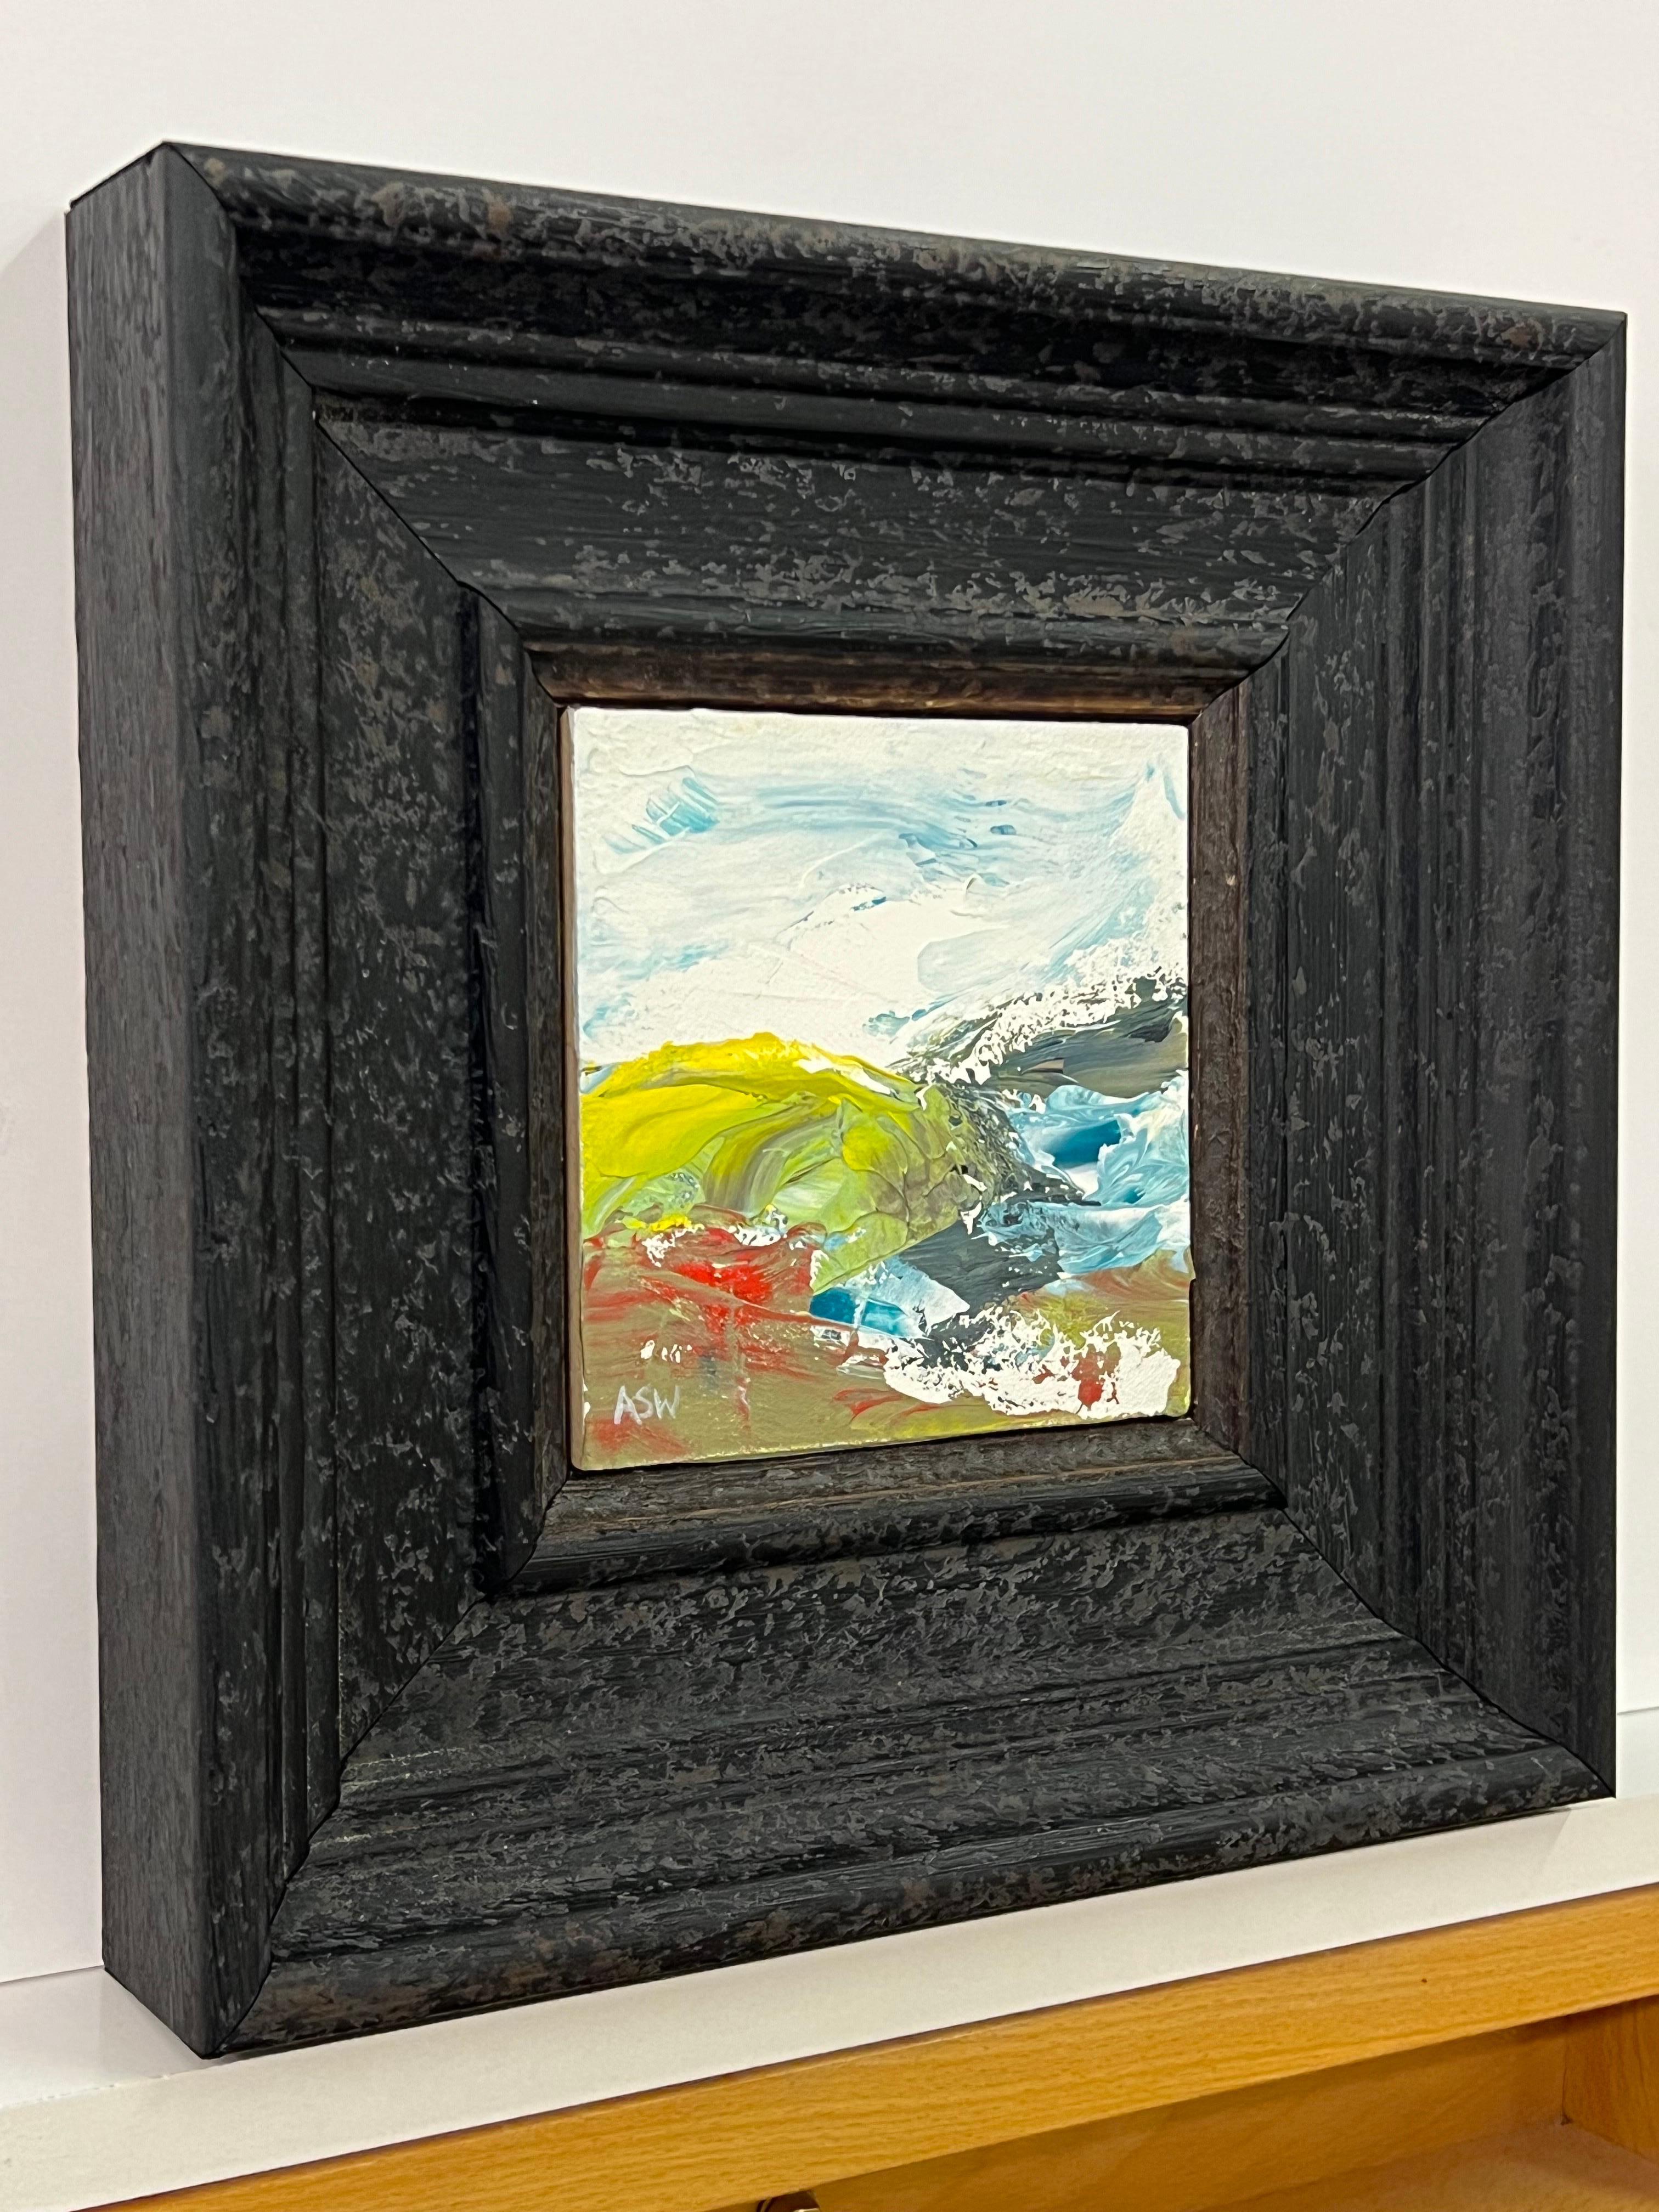 Étude de paysage marin abstrait miniature d'un artiste britannique contemporain de la série Impasto - Painting de Angela Wakefield